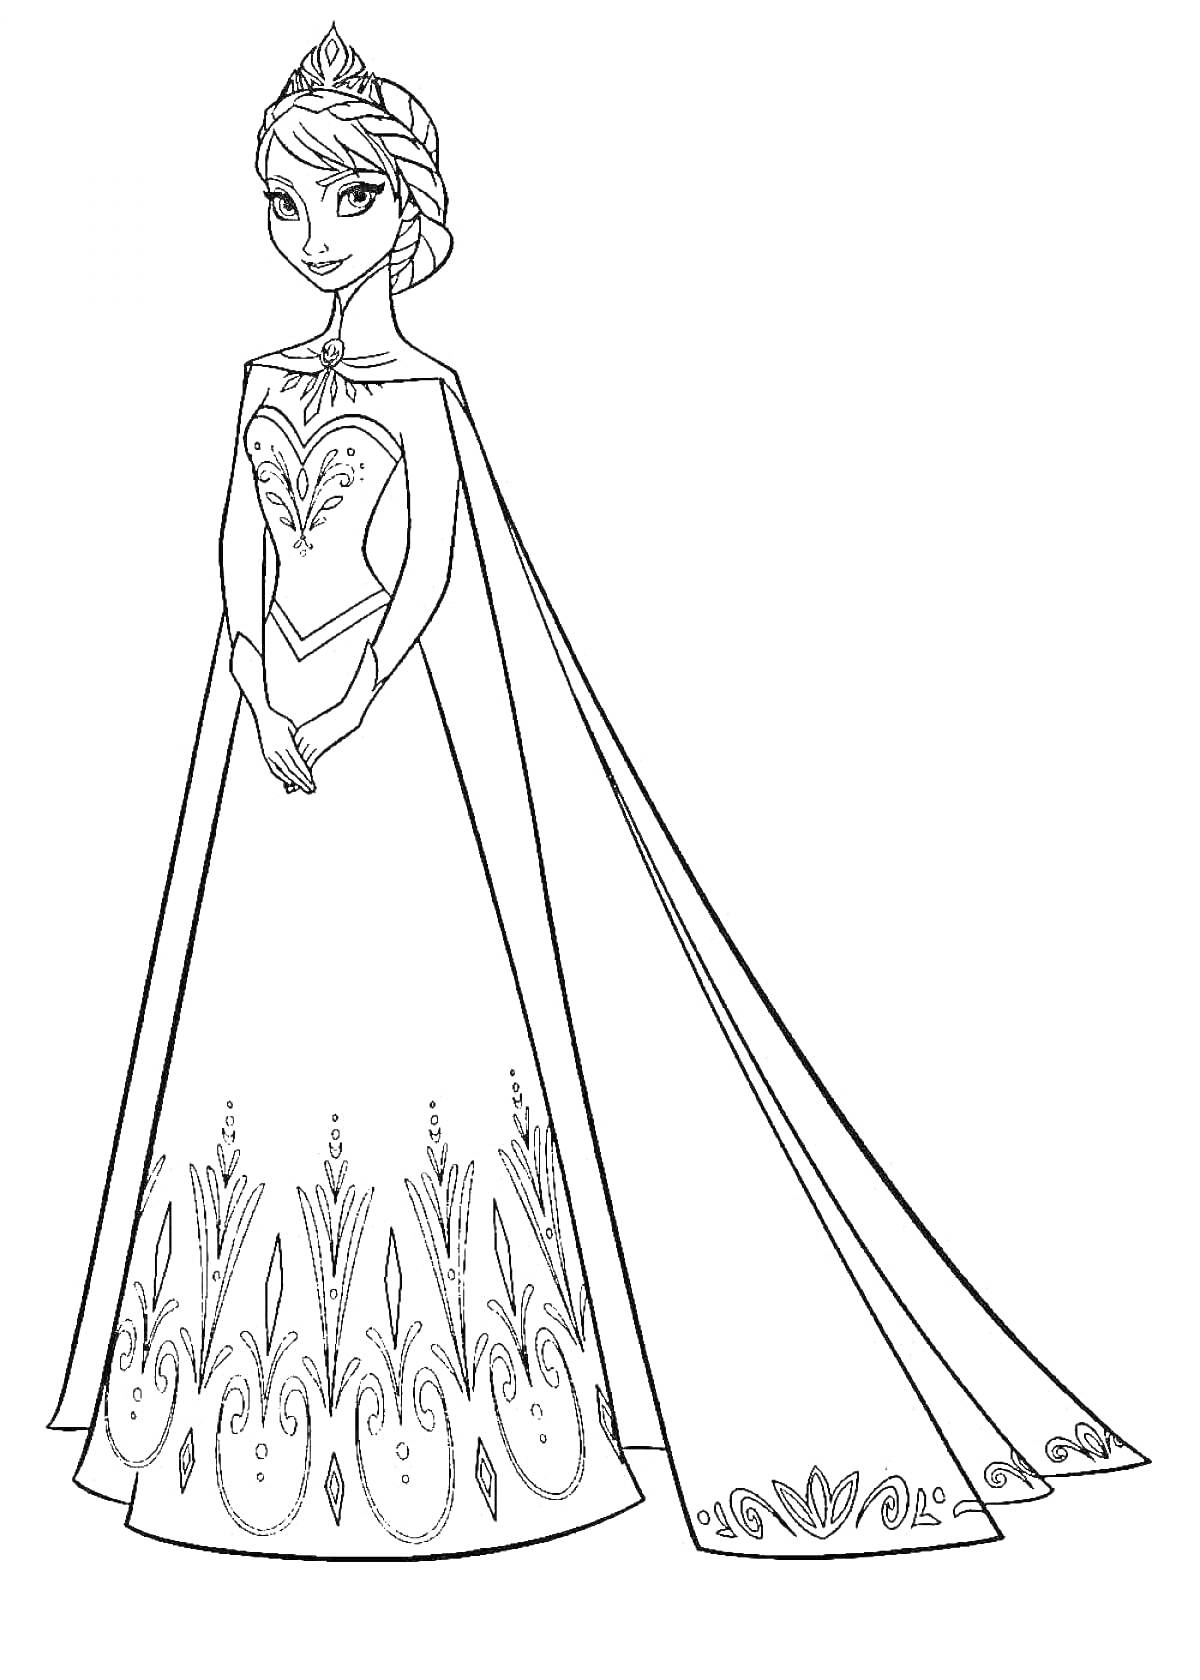 Раскраска Принцесса со сложной прической в длинном платье с узорами и мантией